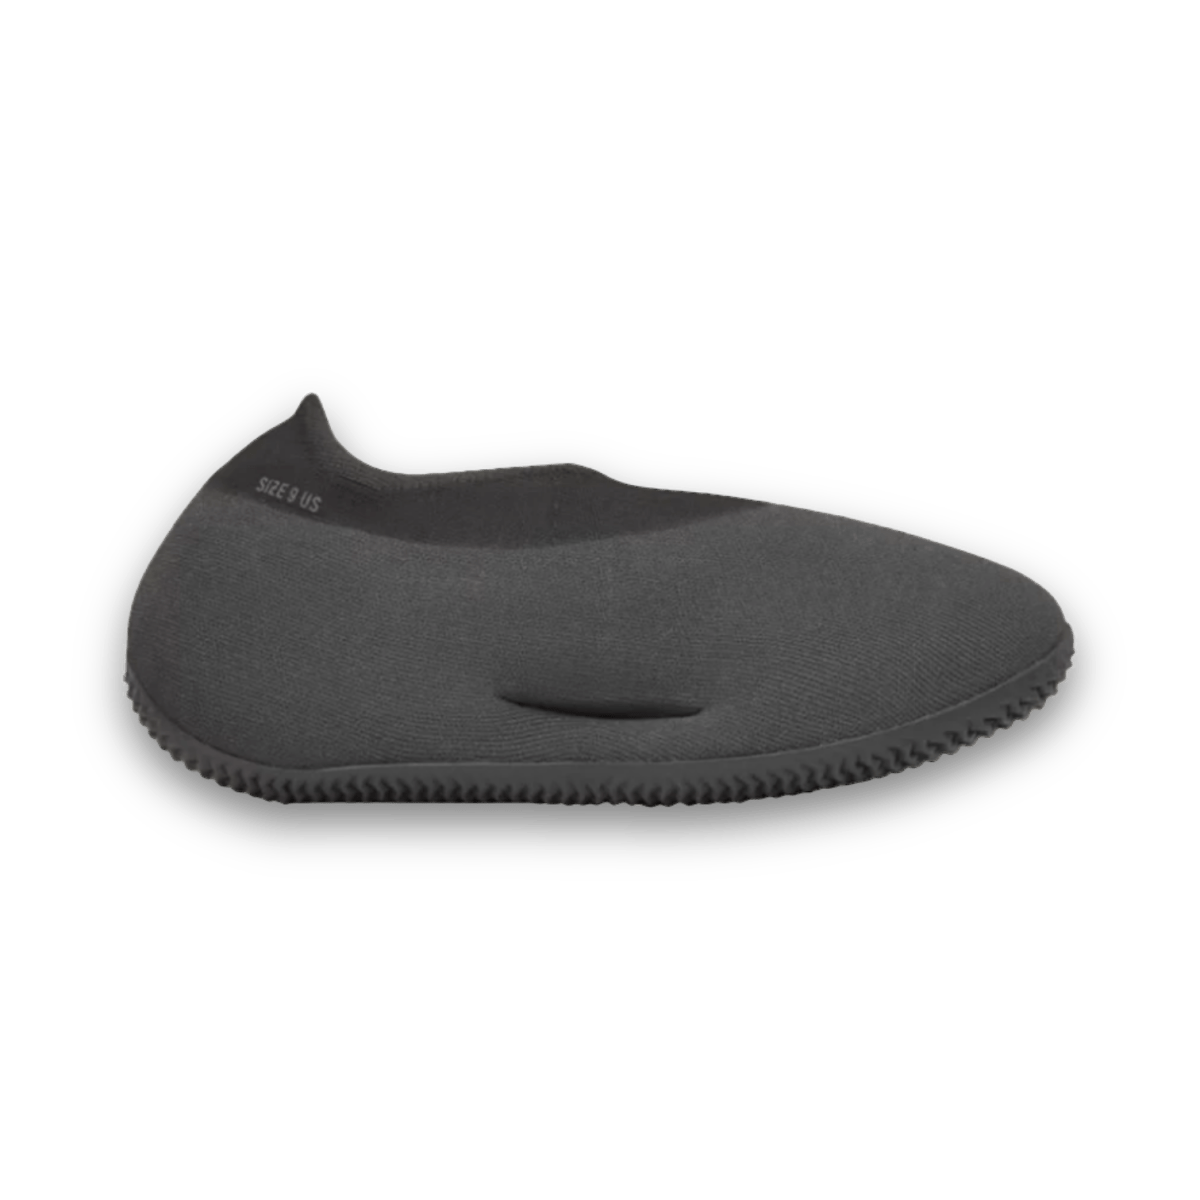 Yeezy Knit Runner 'Fade Onyx' - Low Sneaker - Jawns on Fire Sneakers & Streetwear